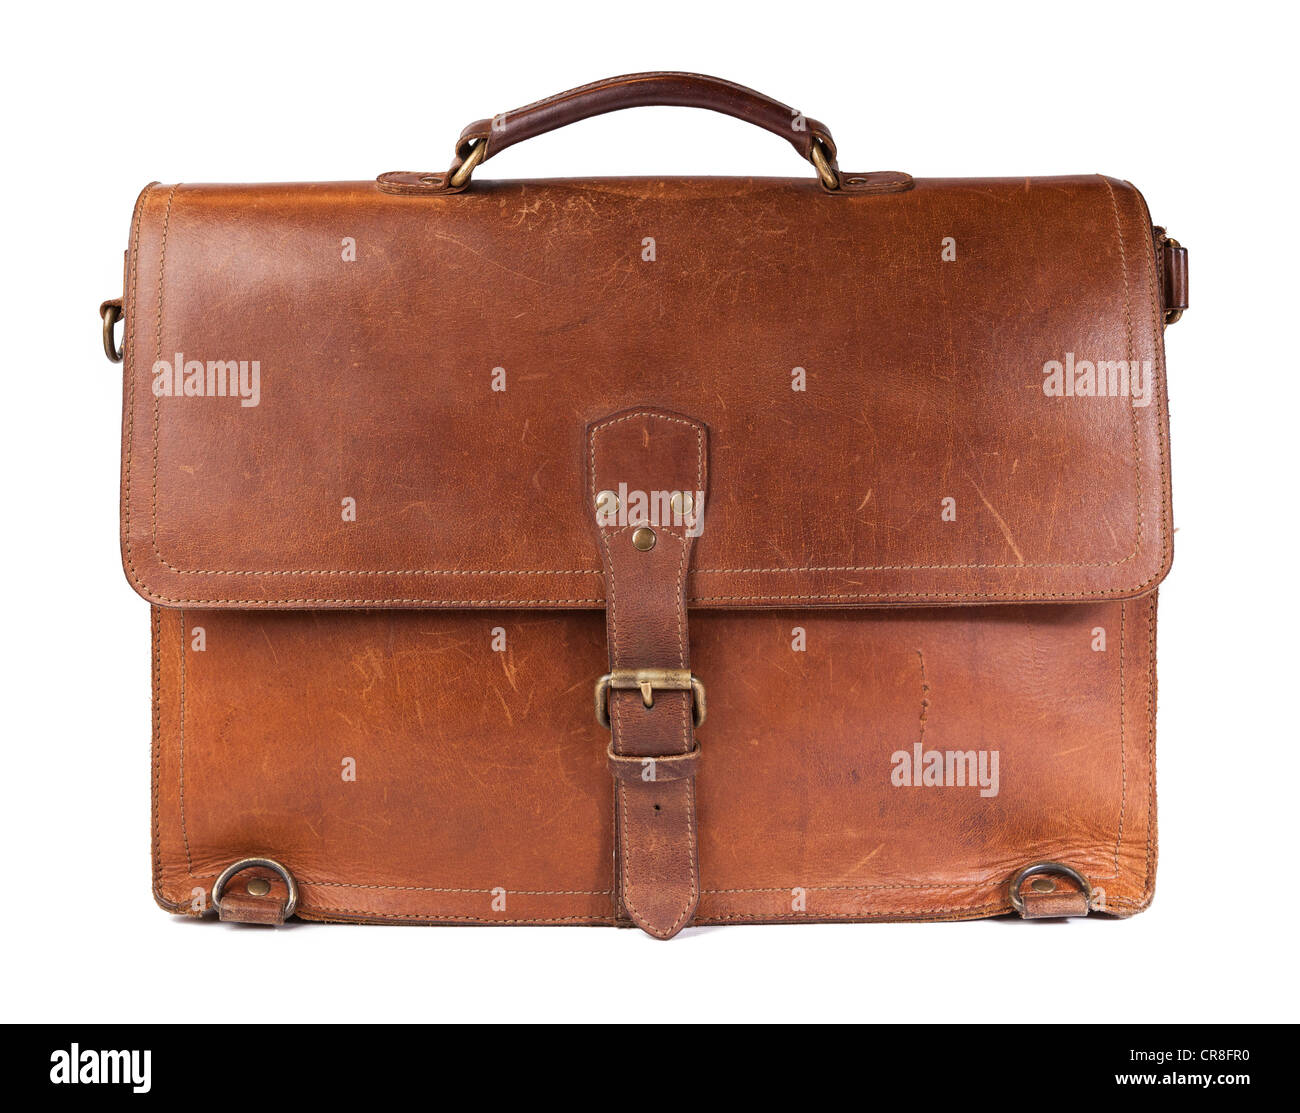 Vintage maletín de cuero marrón con correa y hebilla de latón, trazado de recorte incluido Foto de stock